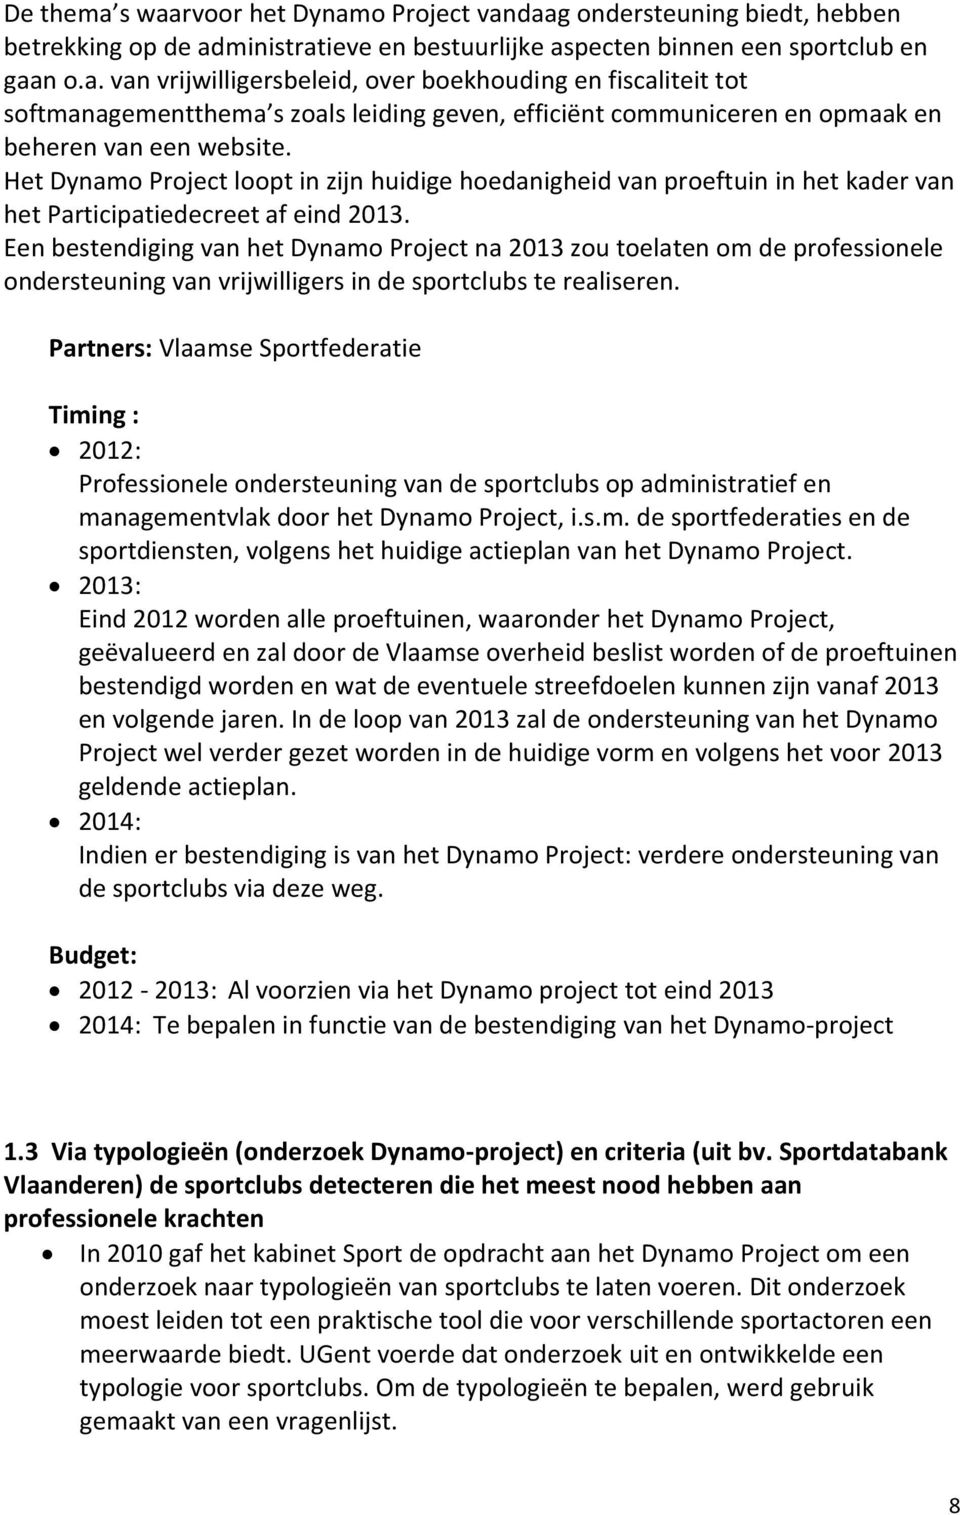 Een bestendiging van het Dynamo Project na 2013 zou toelaten om de professionele ondersteuning van vrijwilligers in de sportclubs te realiseren.